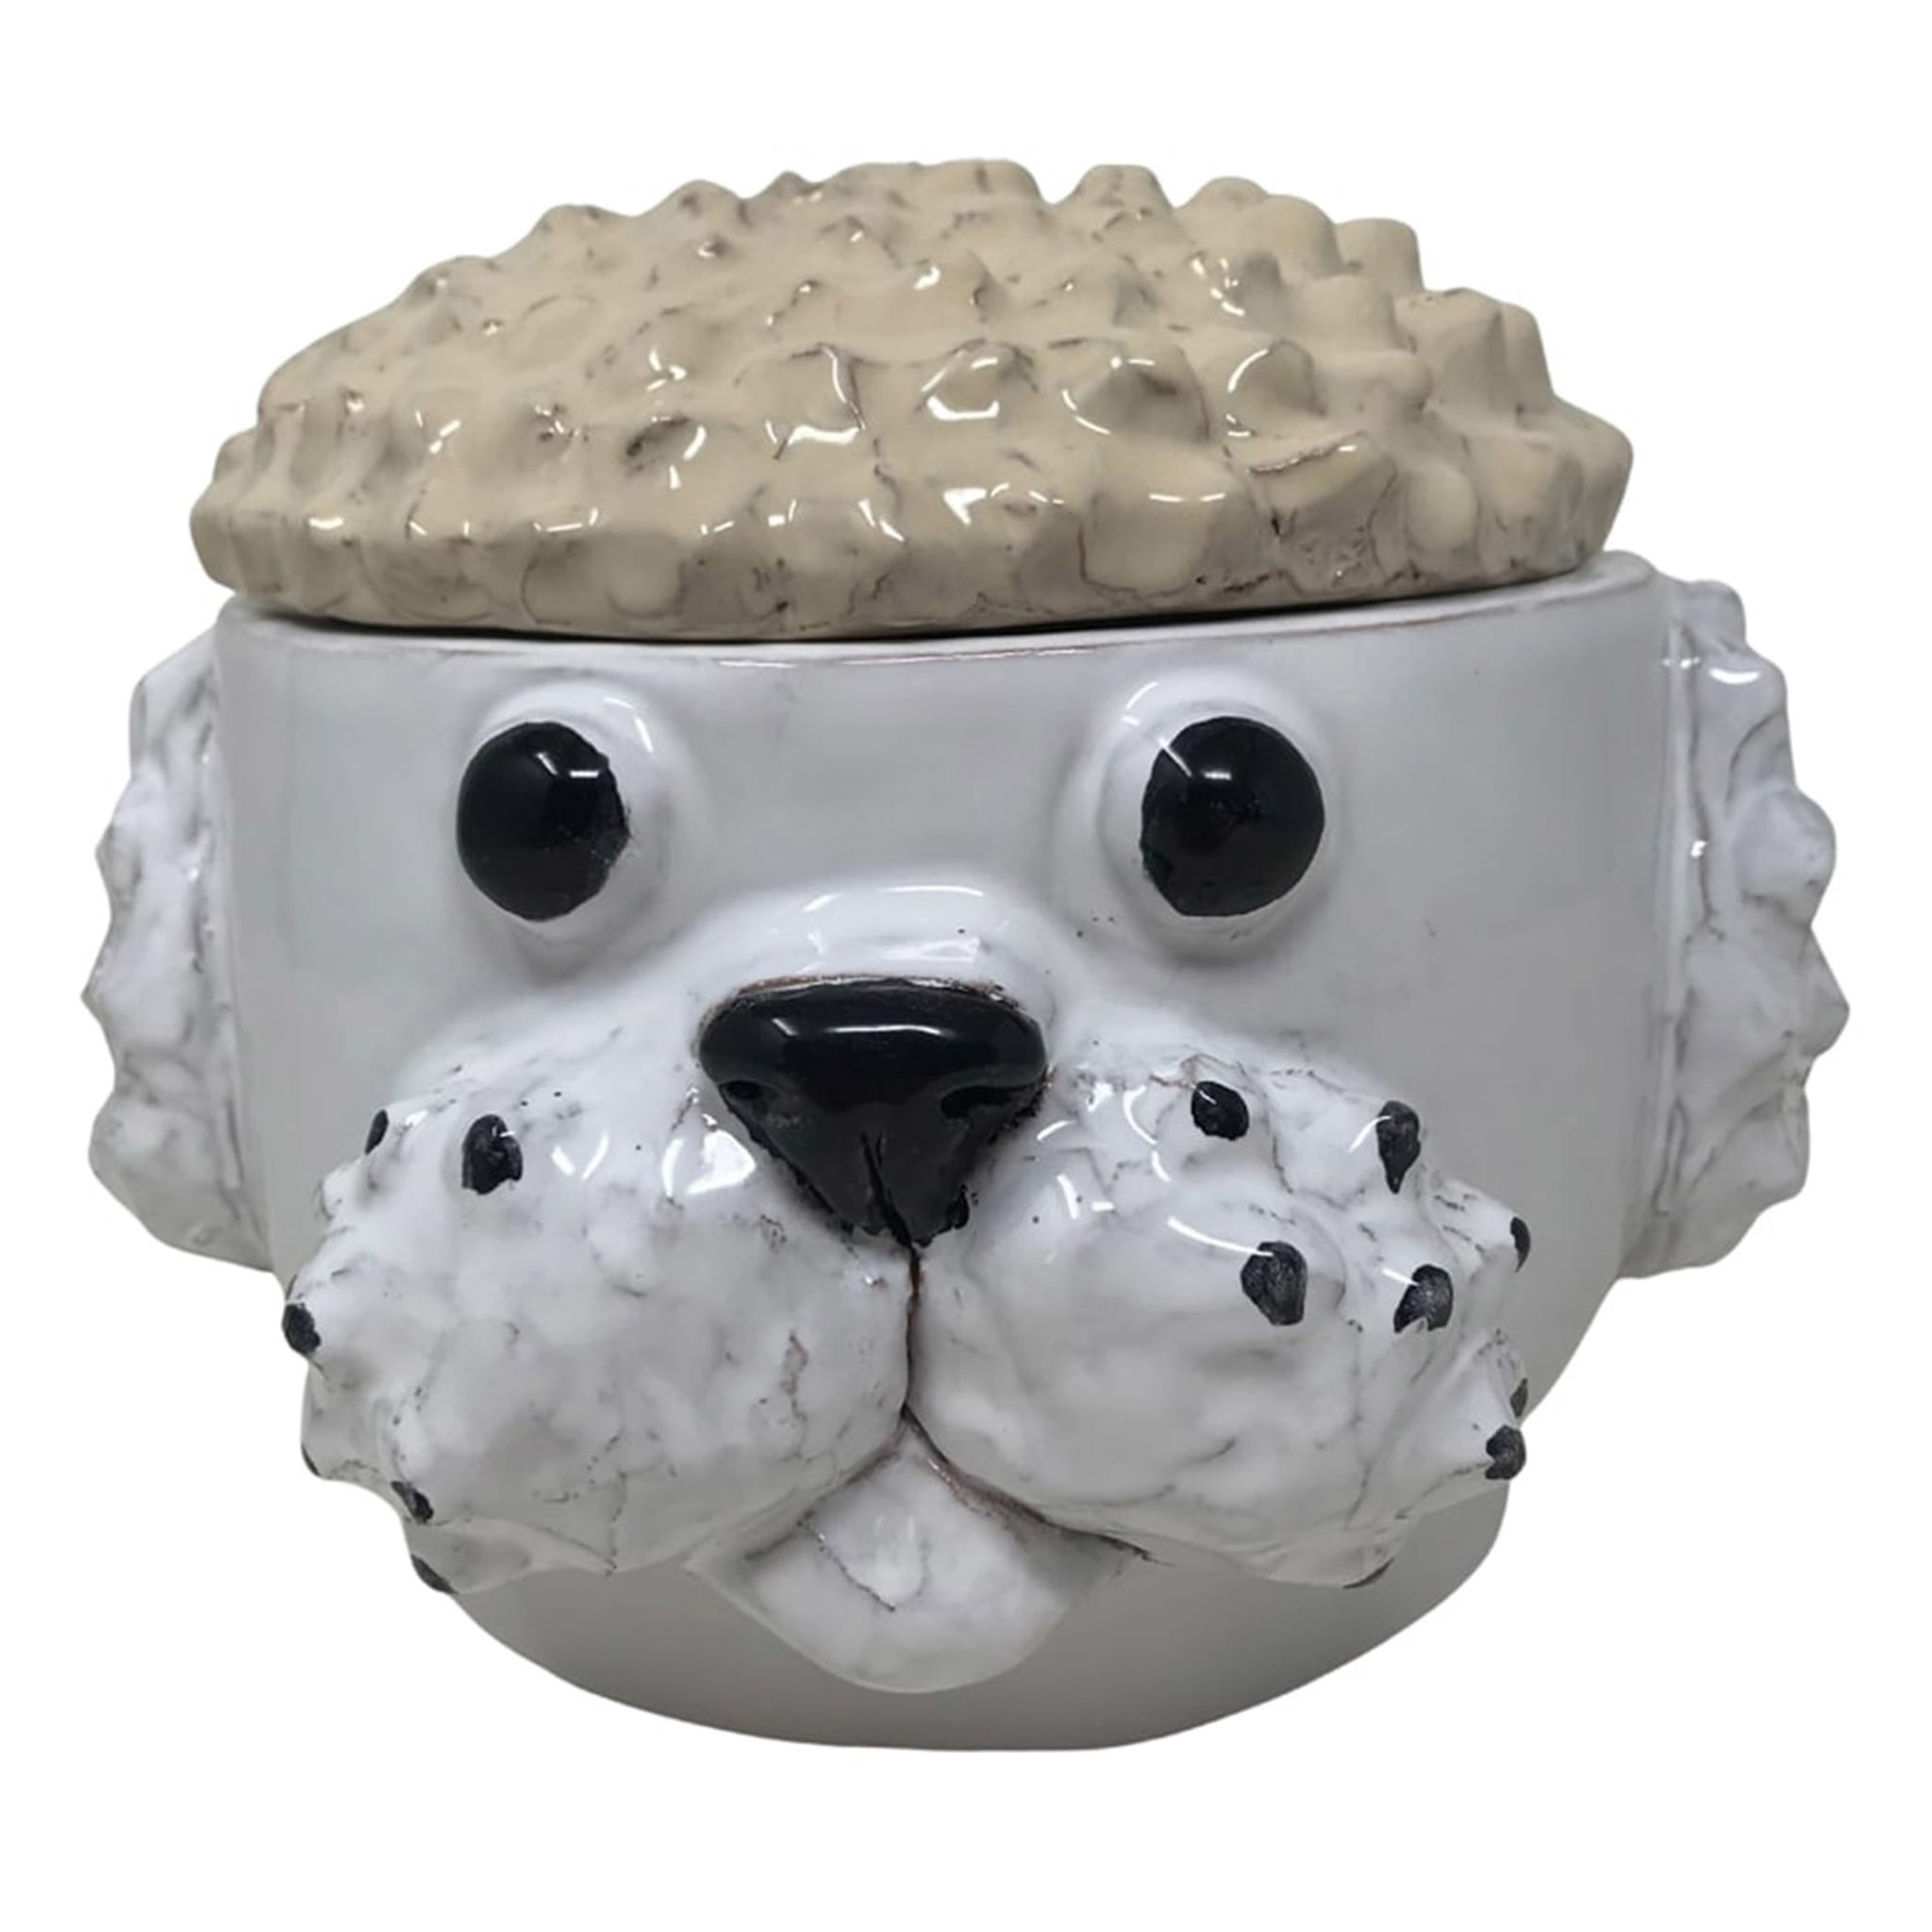 Contenedor pequeño para perros crema y blanco con tapa - Vista principal